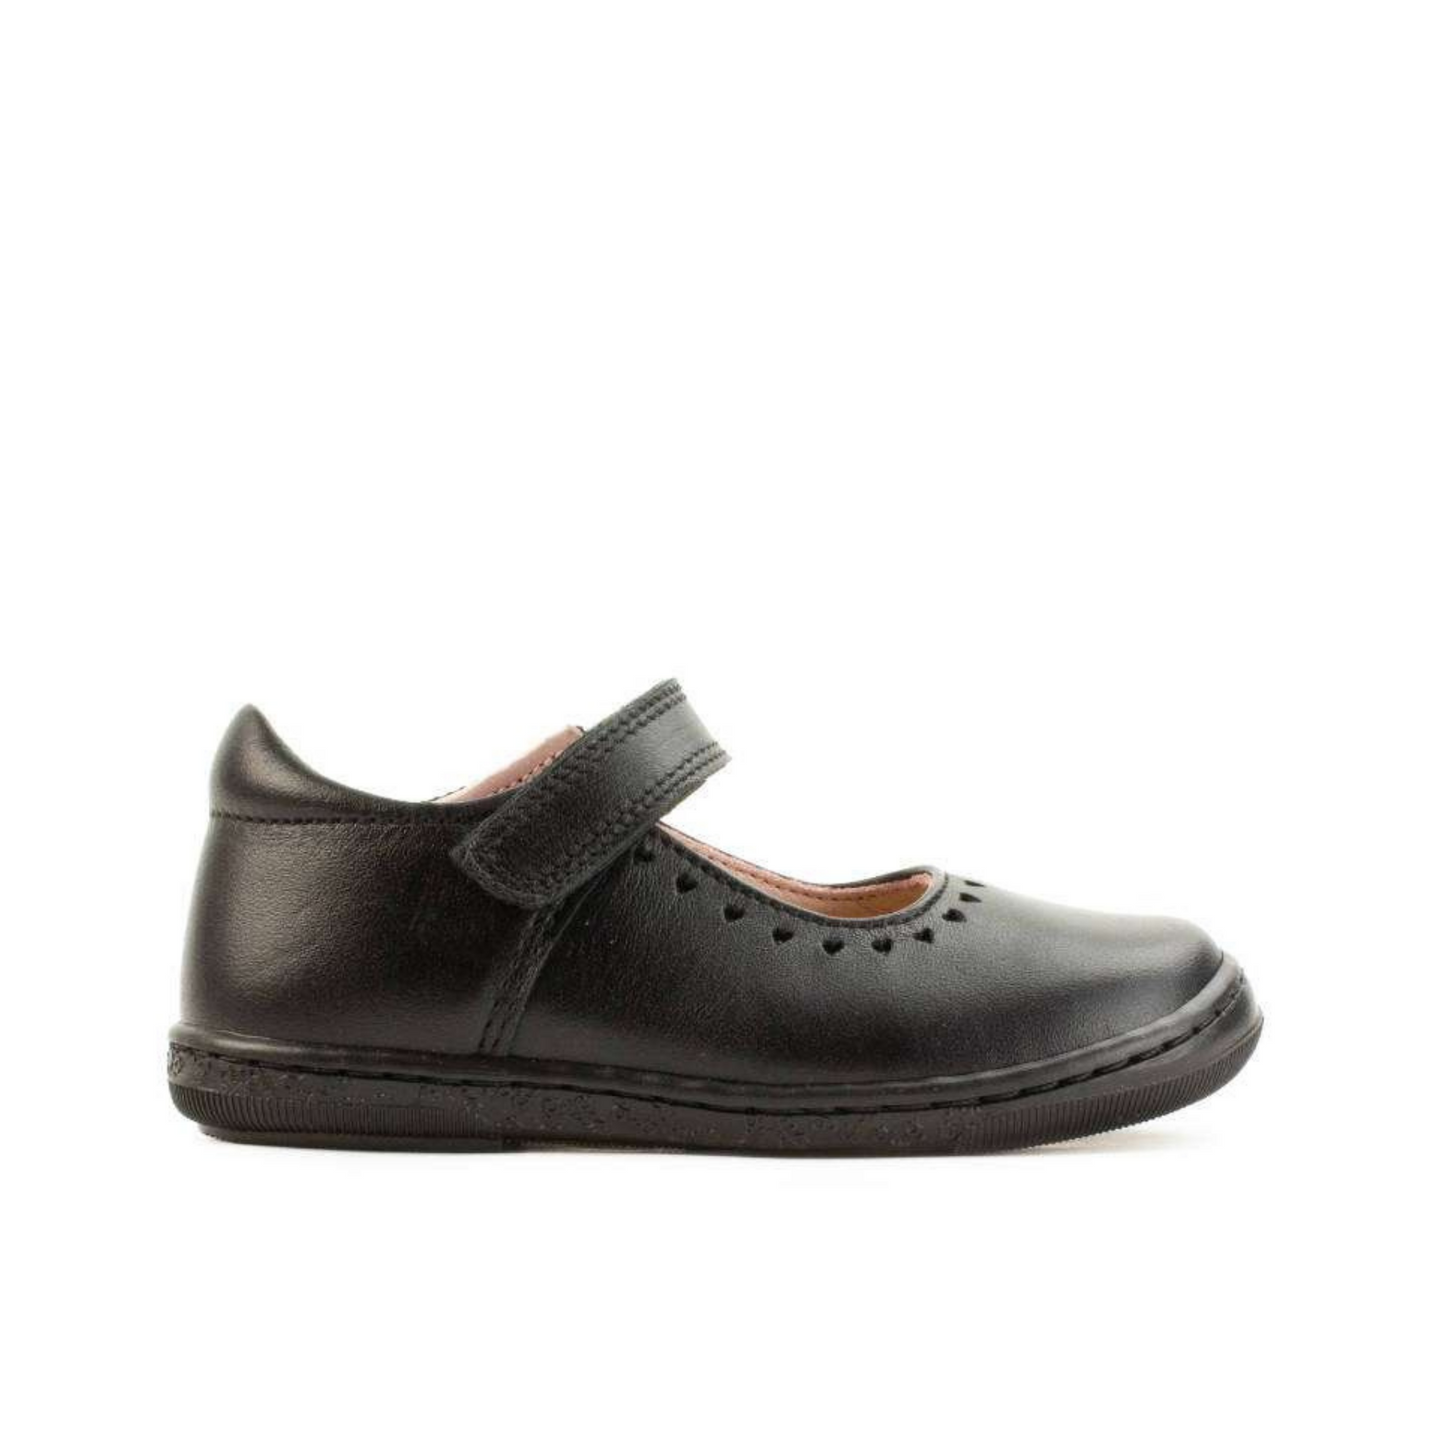 Gisele Black Leather Girl's School Shoe